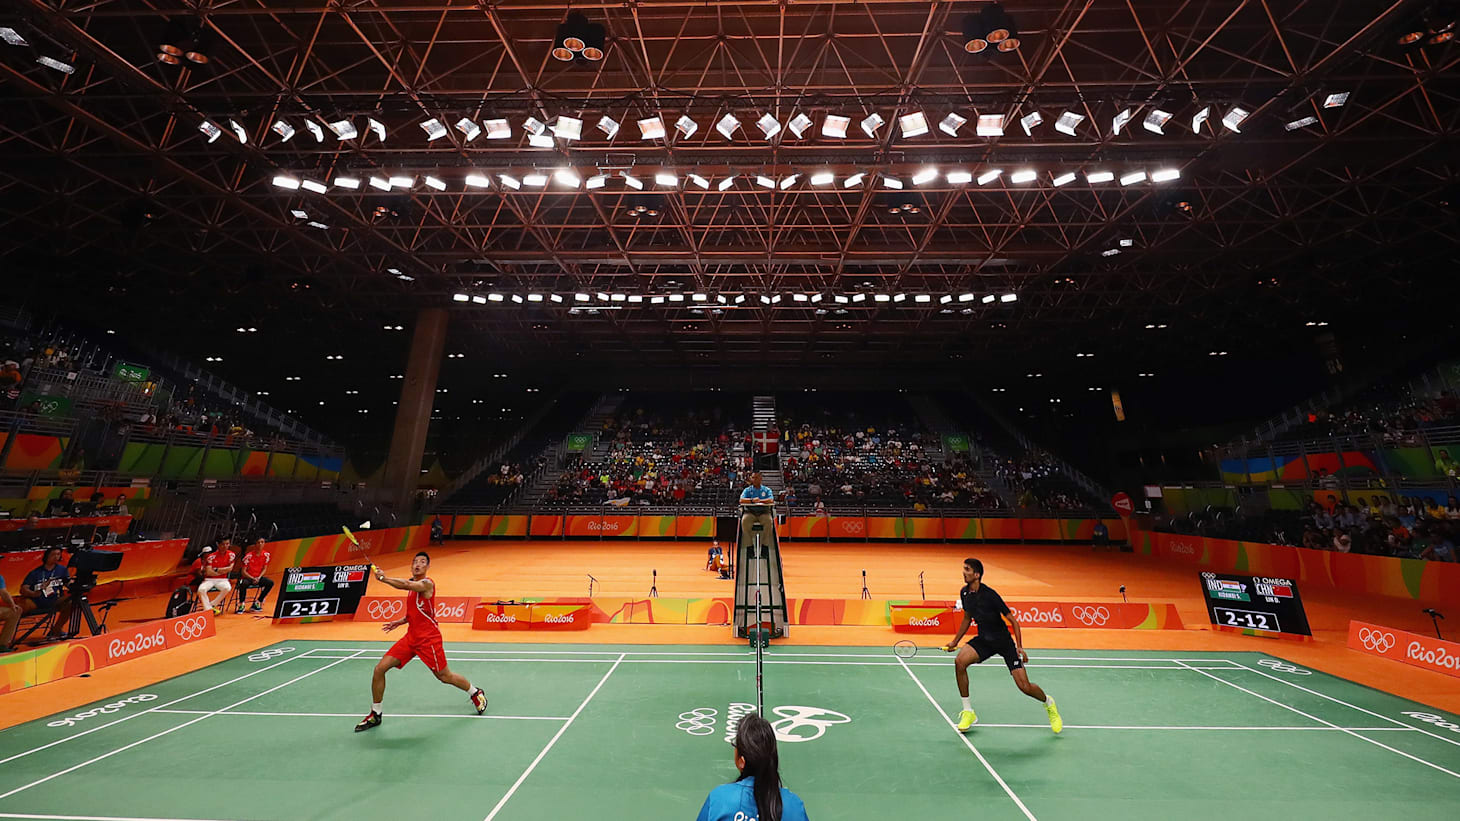 Observation Forvent det Almindelig Rio 2016 podiums reflect badminton's global appeal - Olympic News